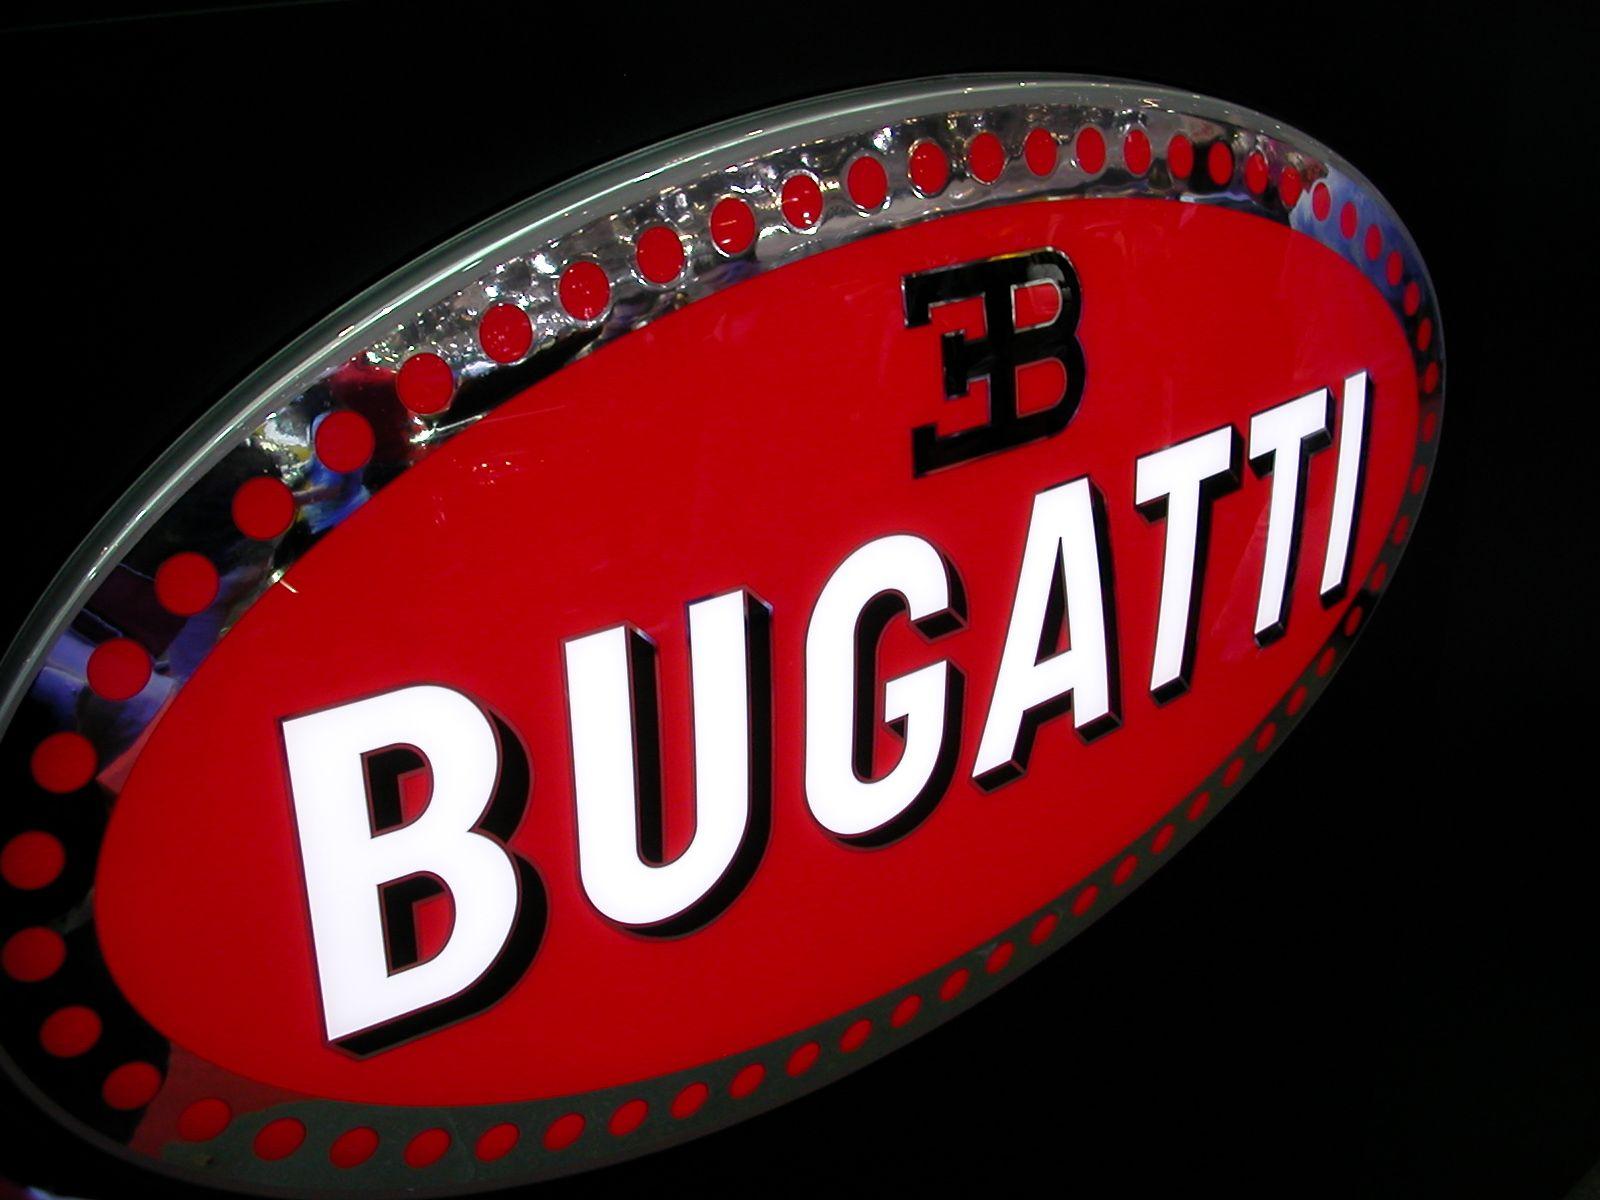 3B Car Logo - Bugatti Logo, Bugatti Car Symbol Meaning and History | Car Brand ...